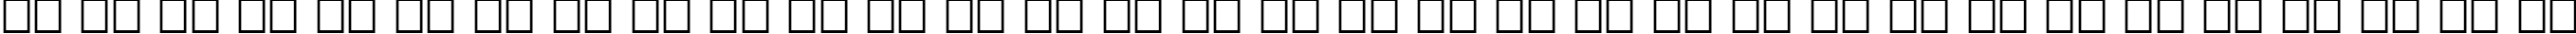 Пример написания русского алфавита шрифтом Encient German Gothic